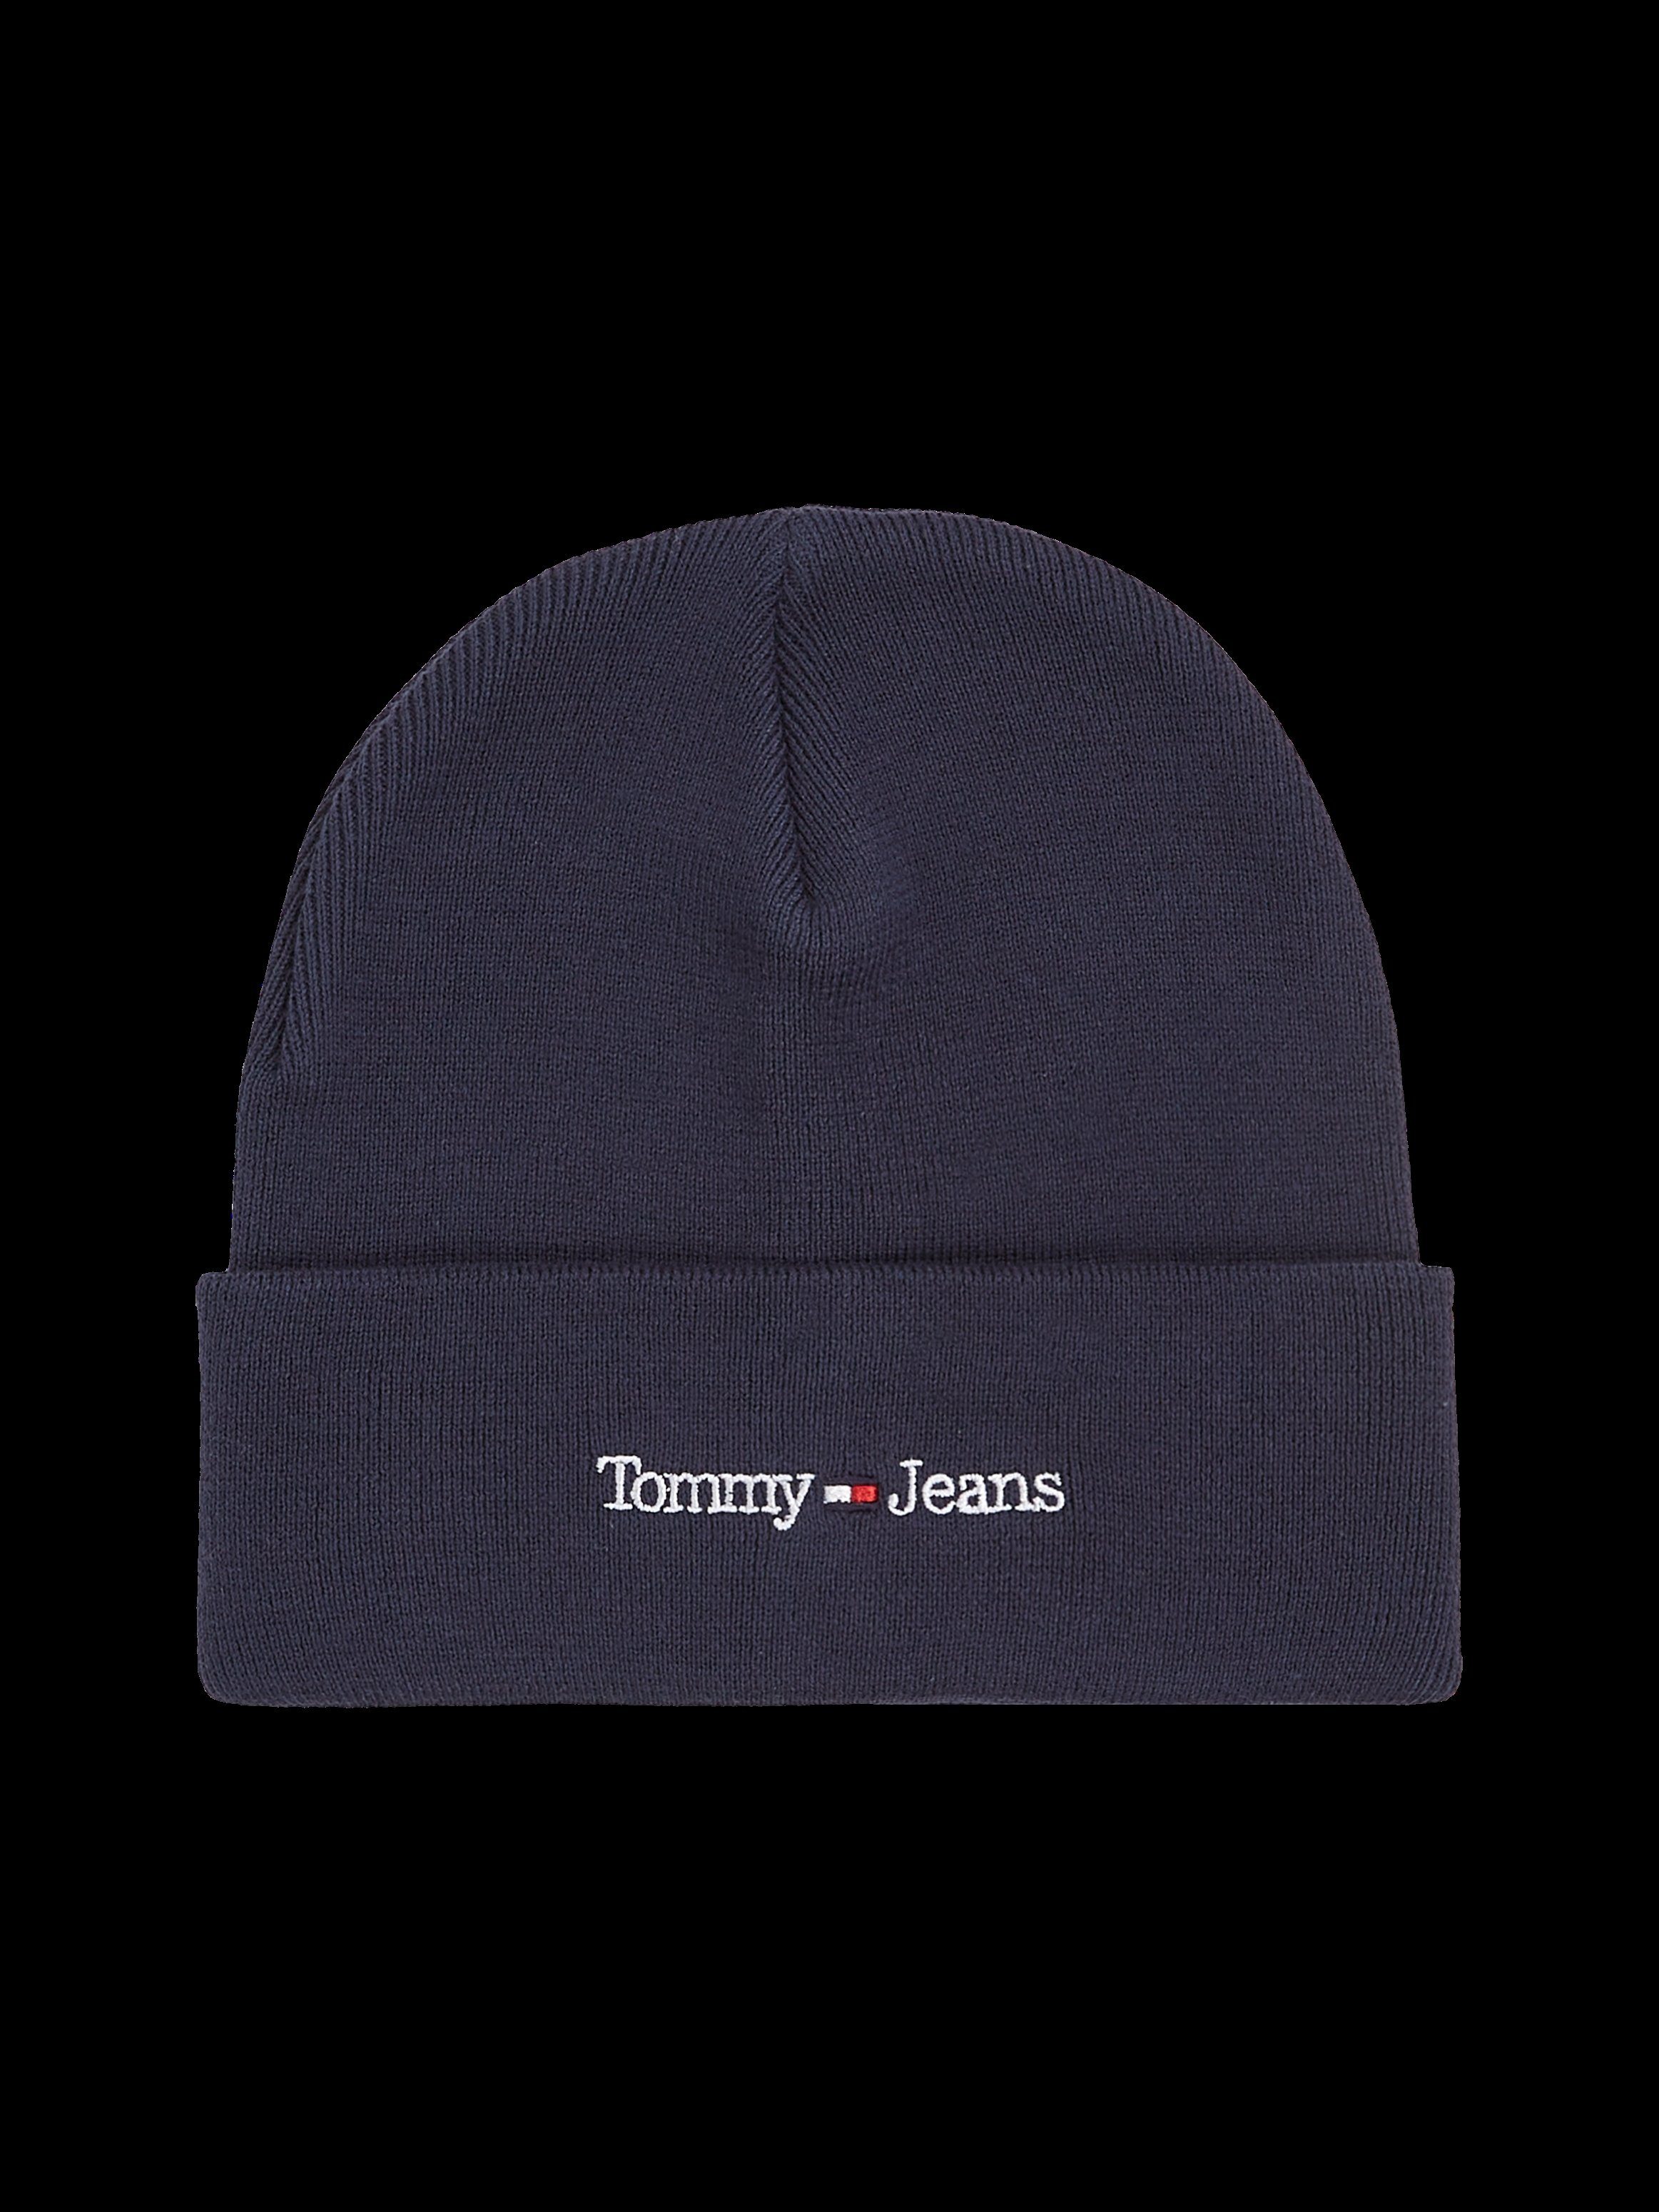 Tommy Jeans Eigenschaften cooler wärmenden Beanie Style mit navy